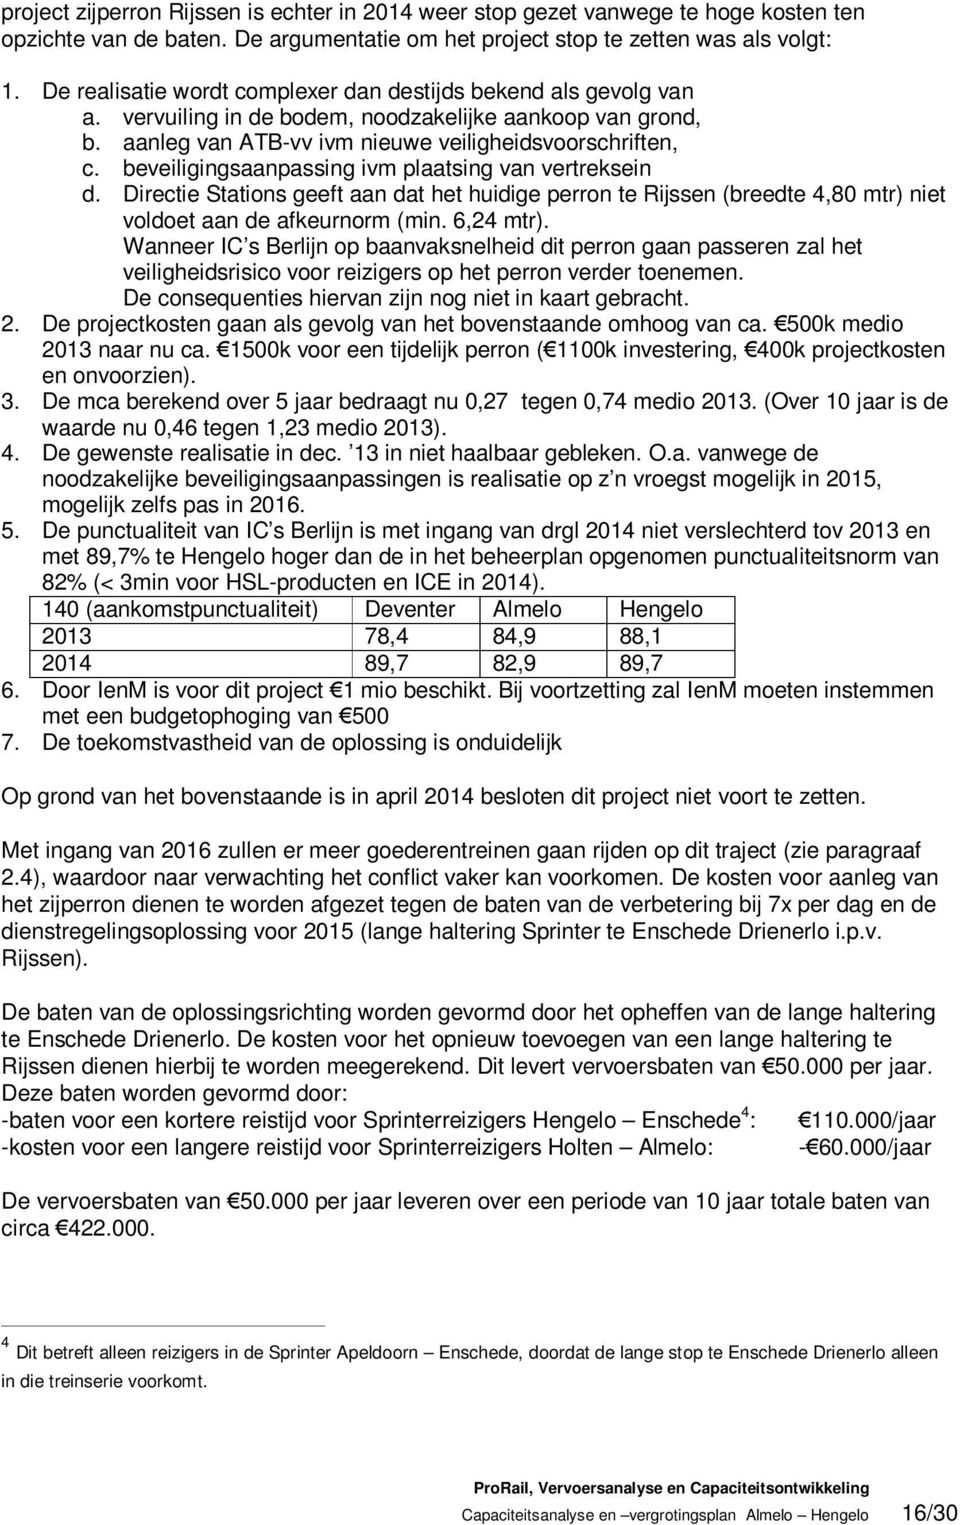 beveiligingsaanpassing ivm plaatsing van vertreksein d. Directie Stations geeft aan dat het huidige perron te Rijssen (breedte 4,80 mtr) niet voldoet aan de afkeurnorm (min. 6,24 mtr).